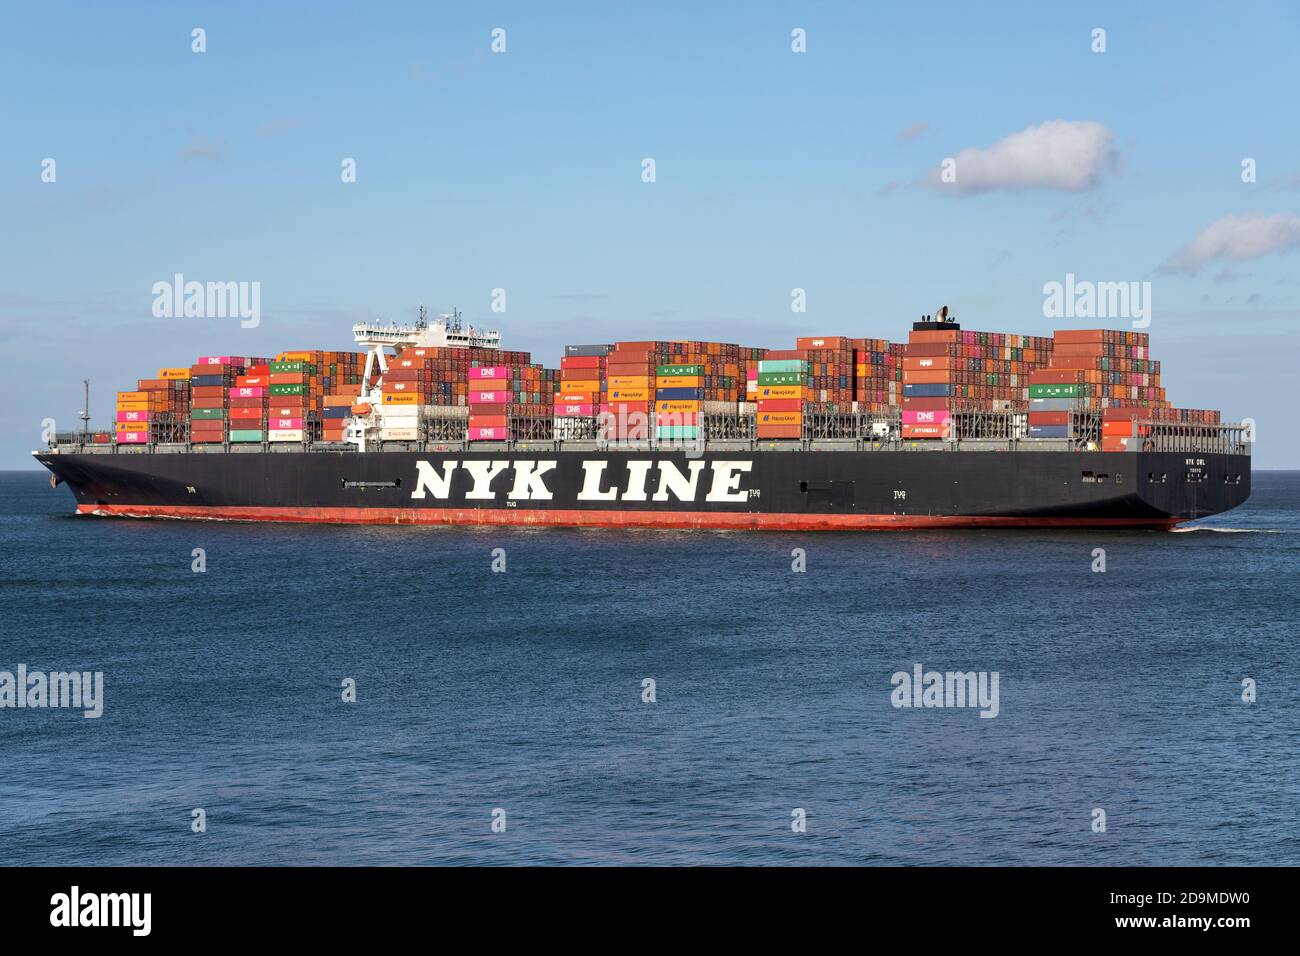 Nyk OWL sur l'Elbe. Nippon Yusen Kabushiki Kaisha (NYK) est l'une des plus anciennes et des plus grandes compagnies maritimes au monde. Banque D'Images